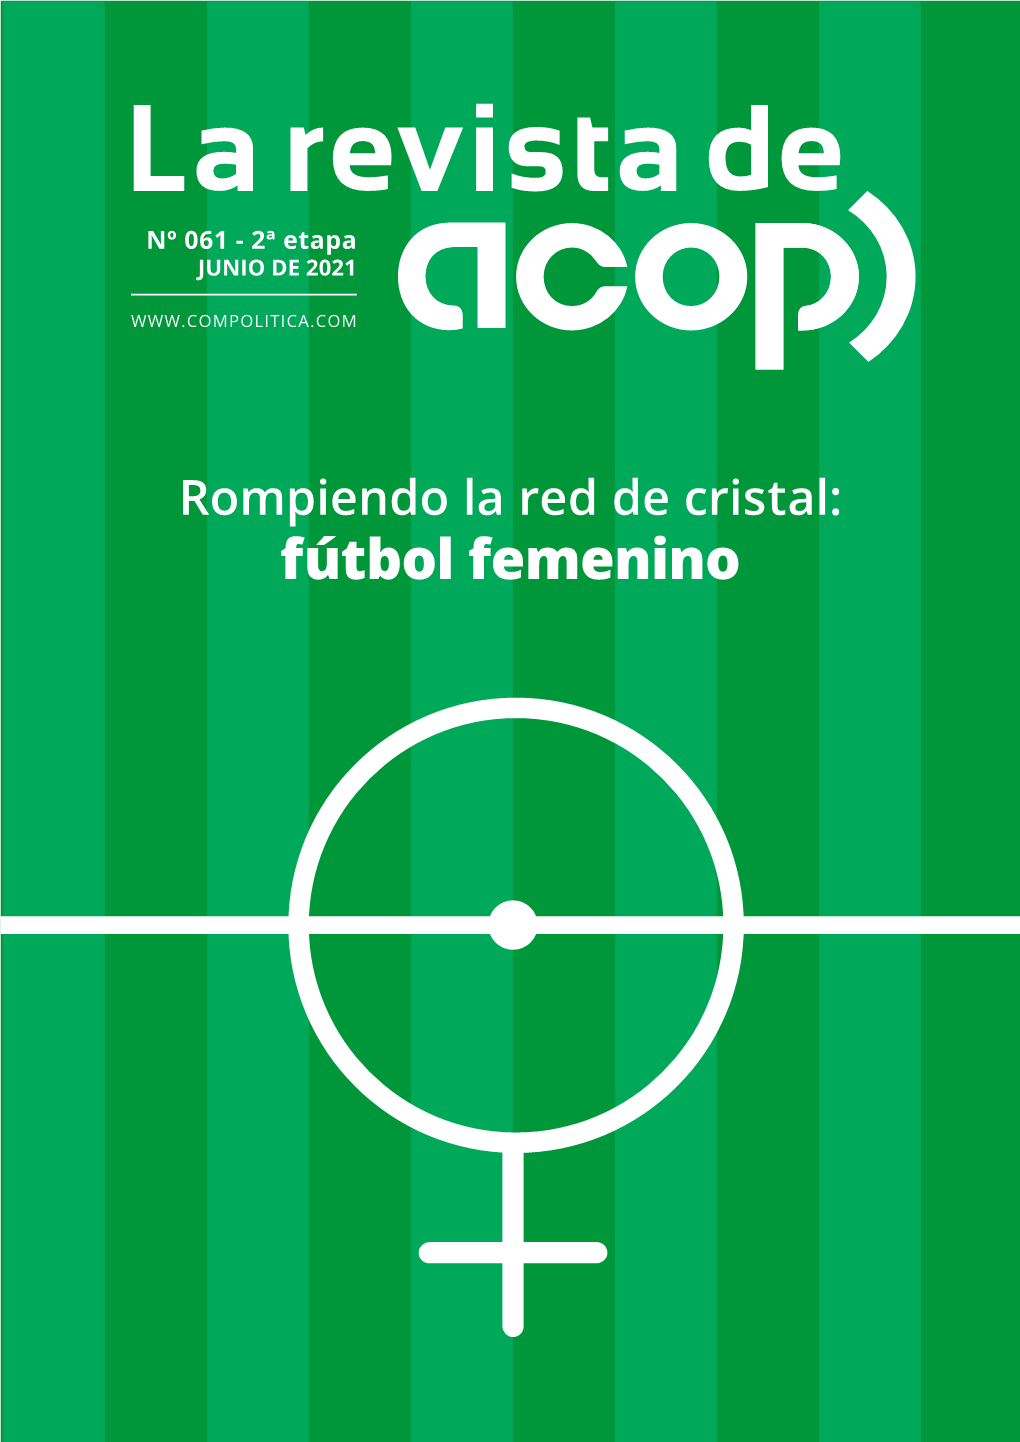 Fútbol Femenino EDITA ACOP - ASOCIACIÓN DE COMUNICACIÓN POLITICA Avda